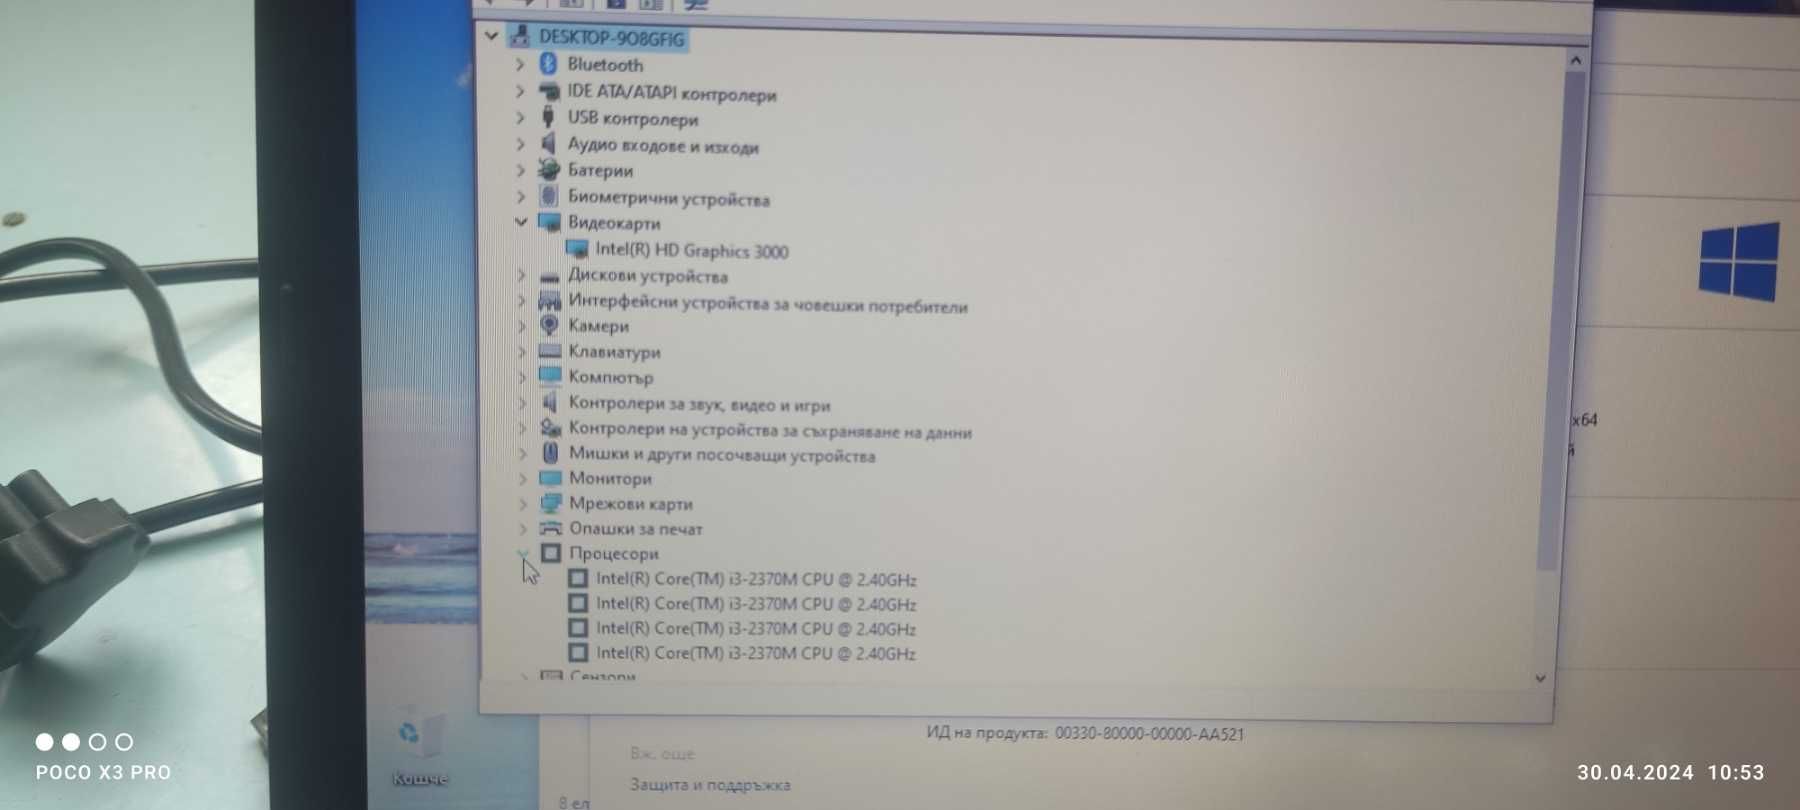 Лаптоп Lenovo  ThinkPad X230i